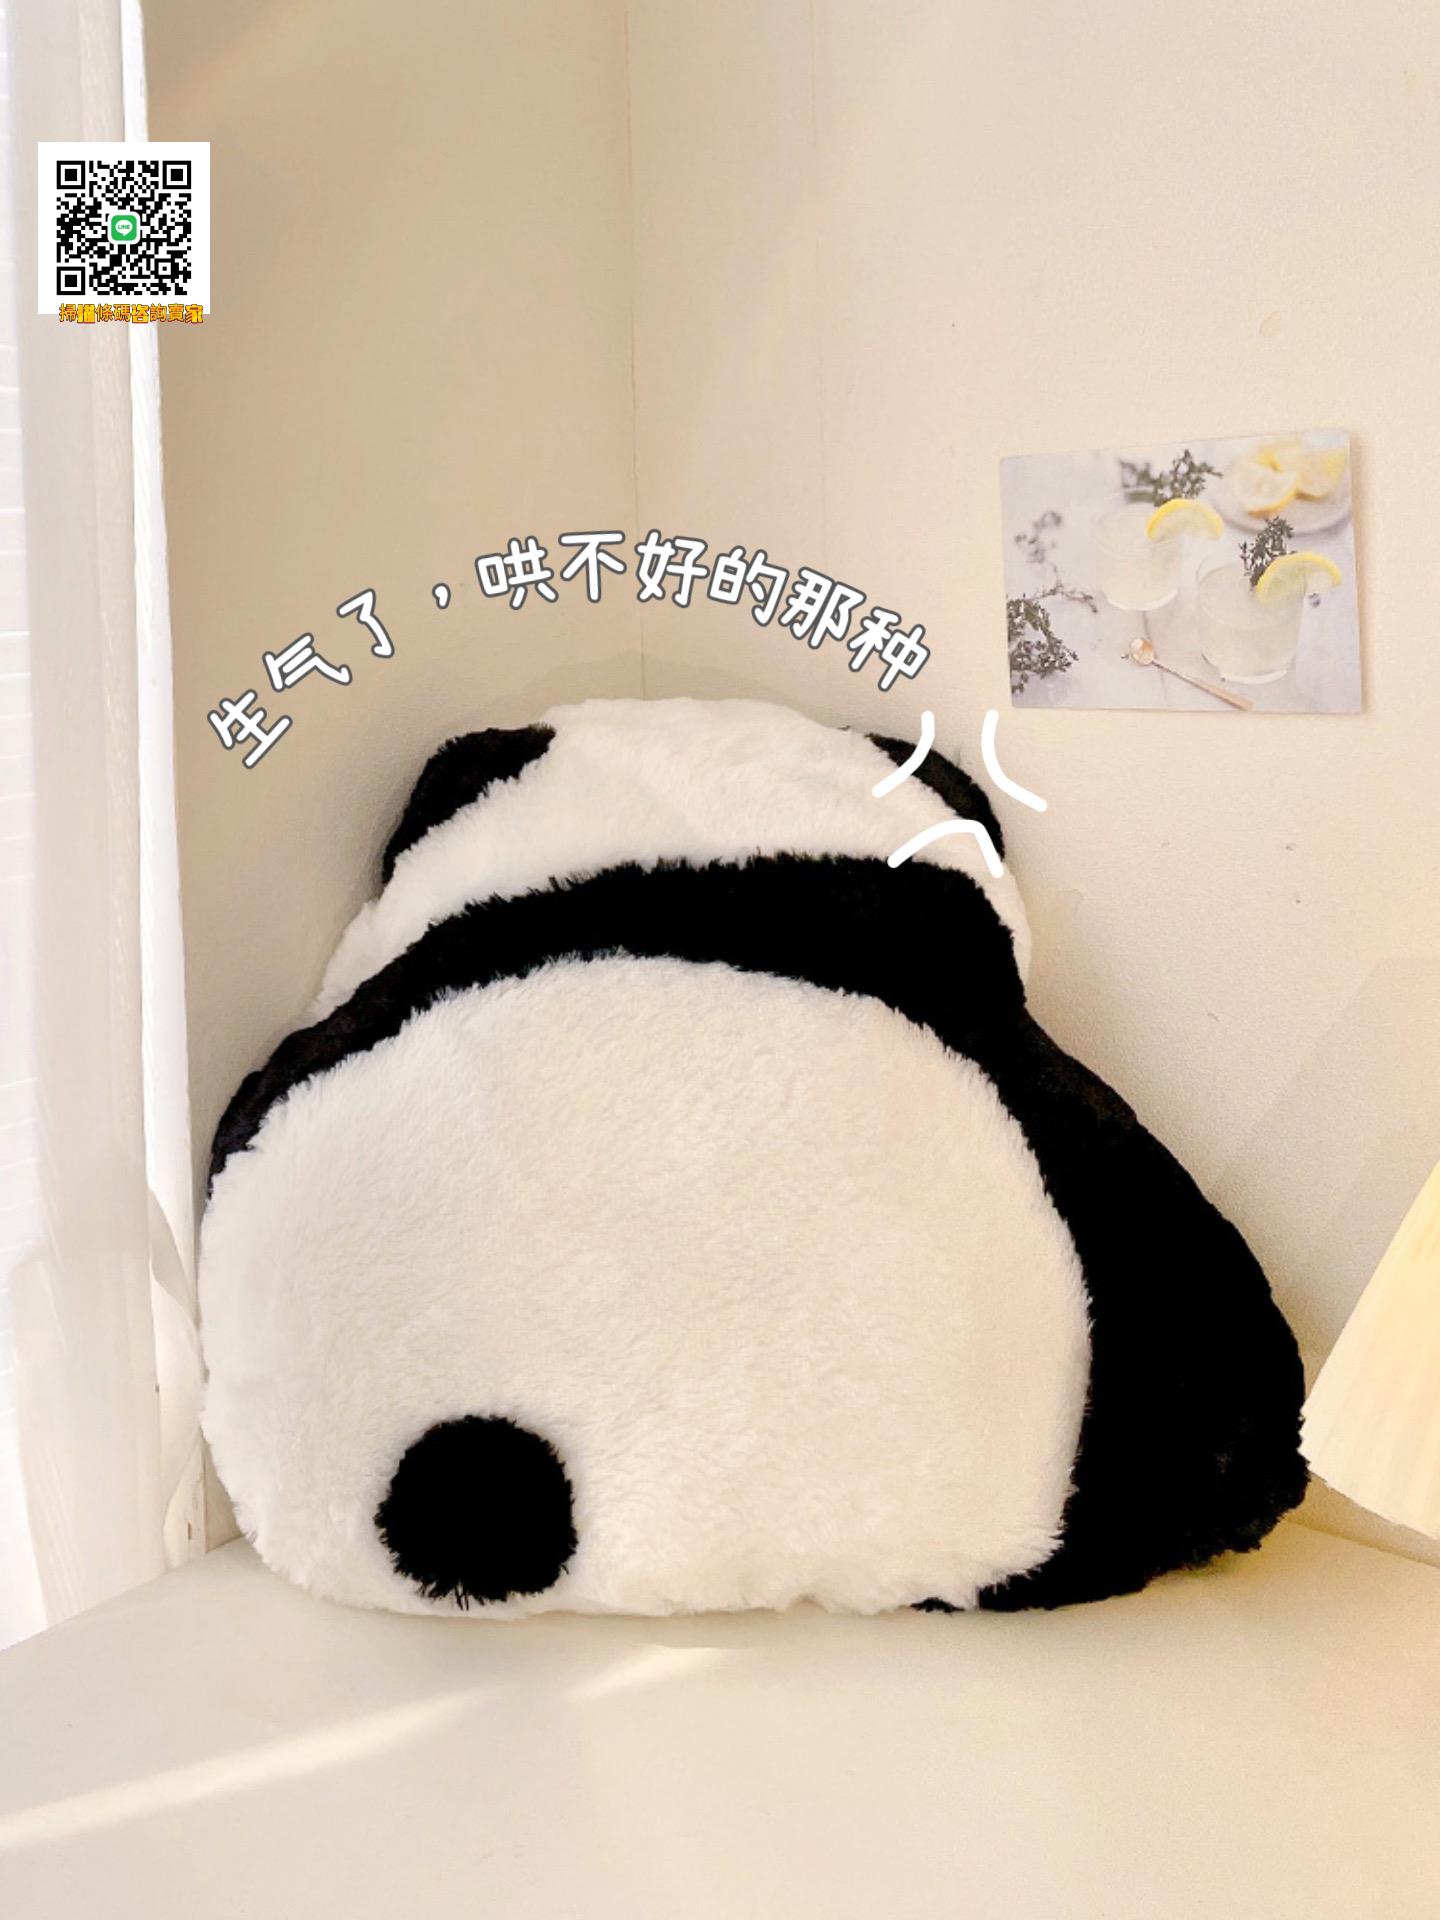 熊貓抱枕玩偶可愛沙發宿舍學生床頭飄窗靠背墊靠枕辦公室靠墊腰靠